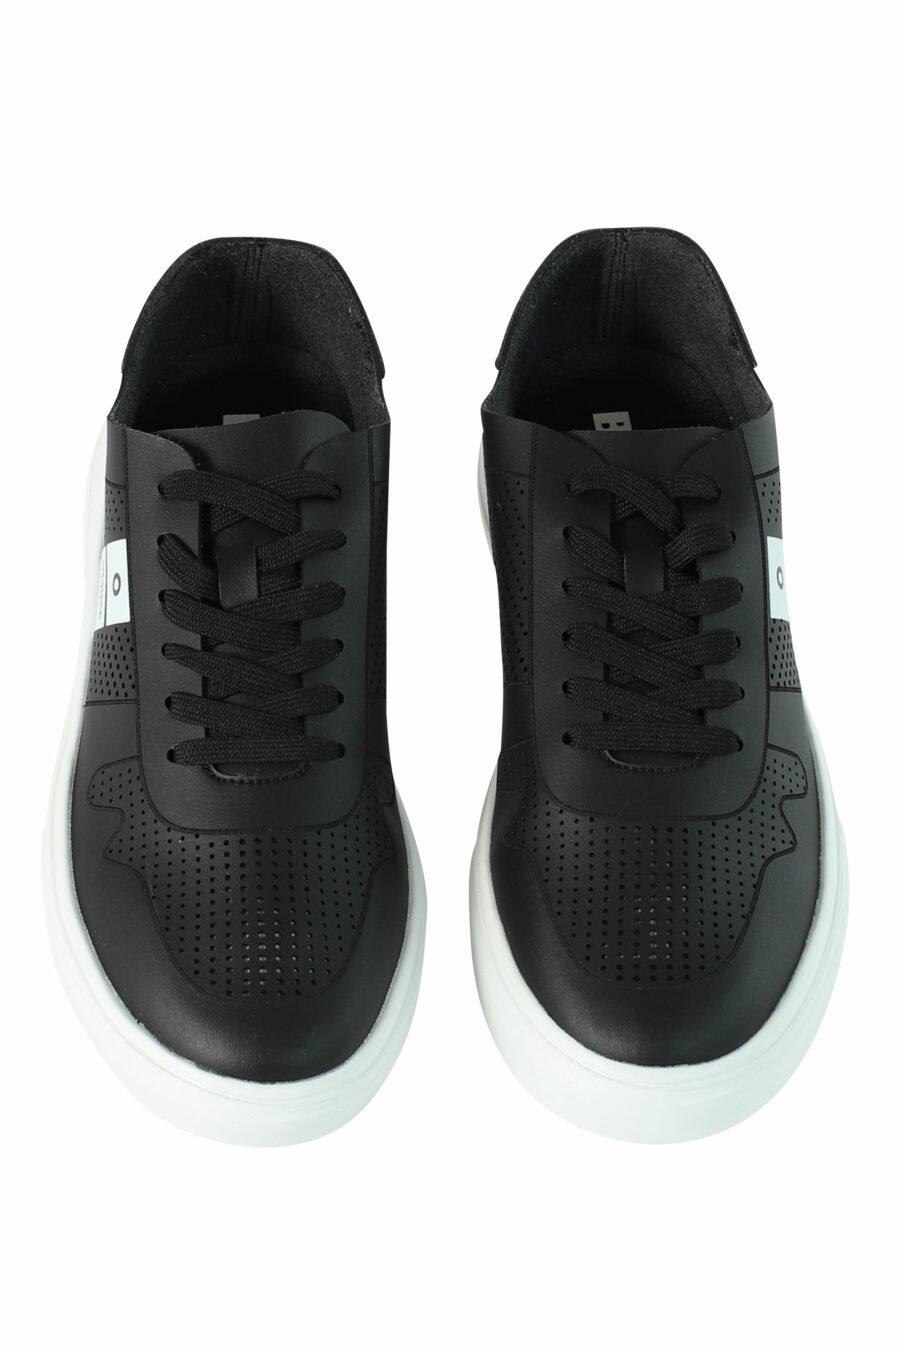 Zapatillas negras "BLAIR" transpirables con logo blanco - 8058156492004 5